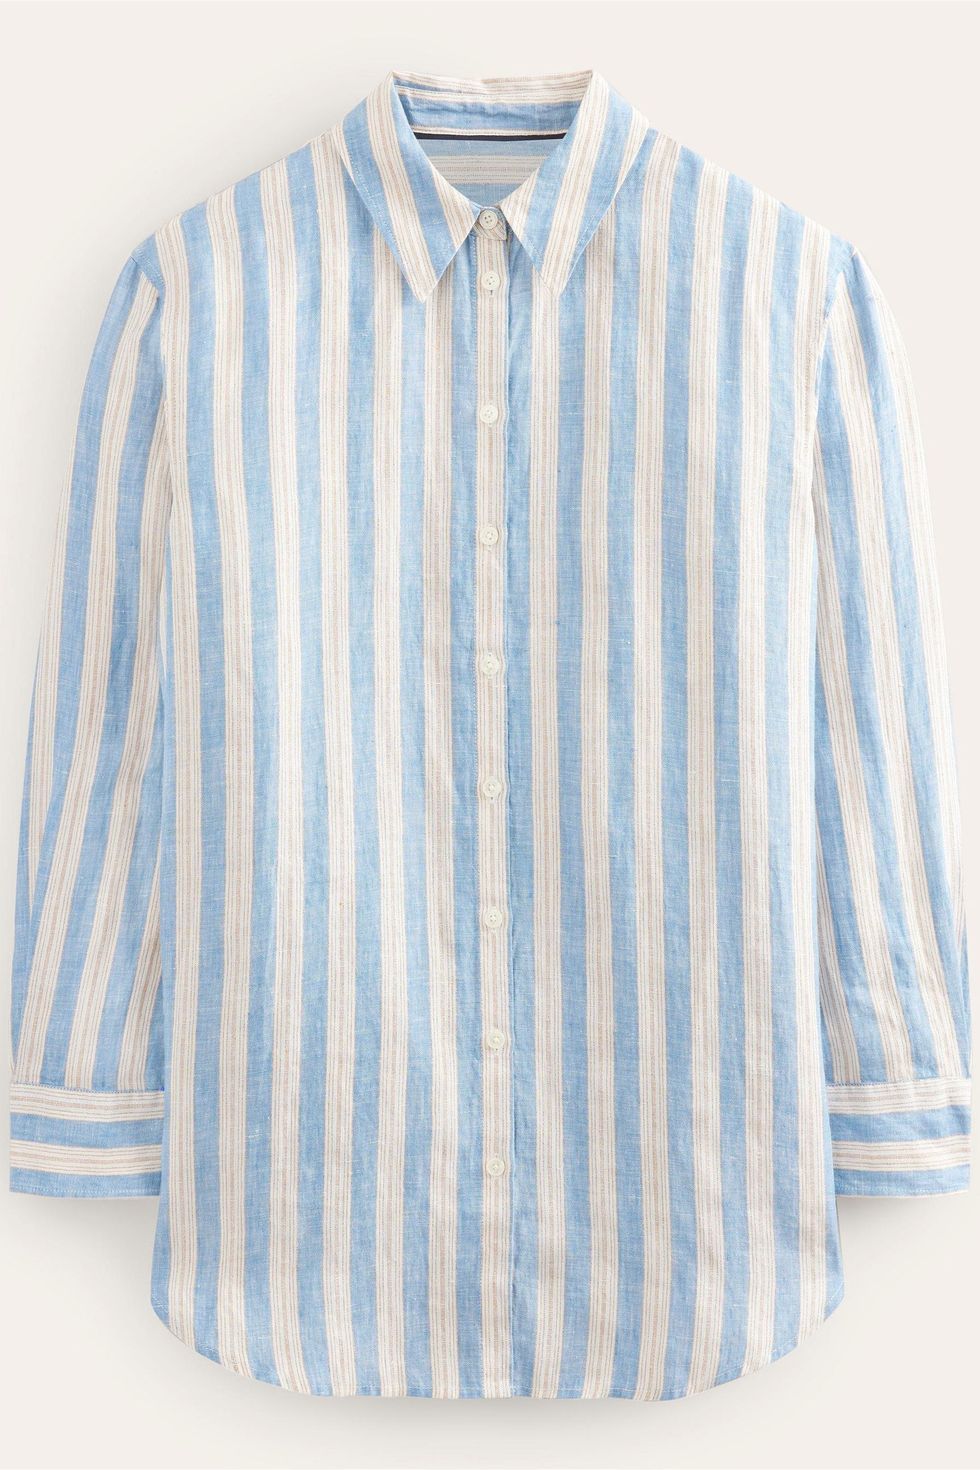 Best stripe coord: Linen shirt and shorts set